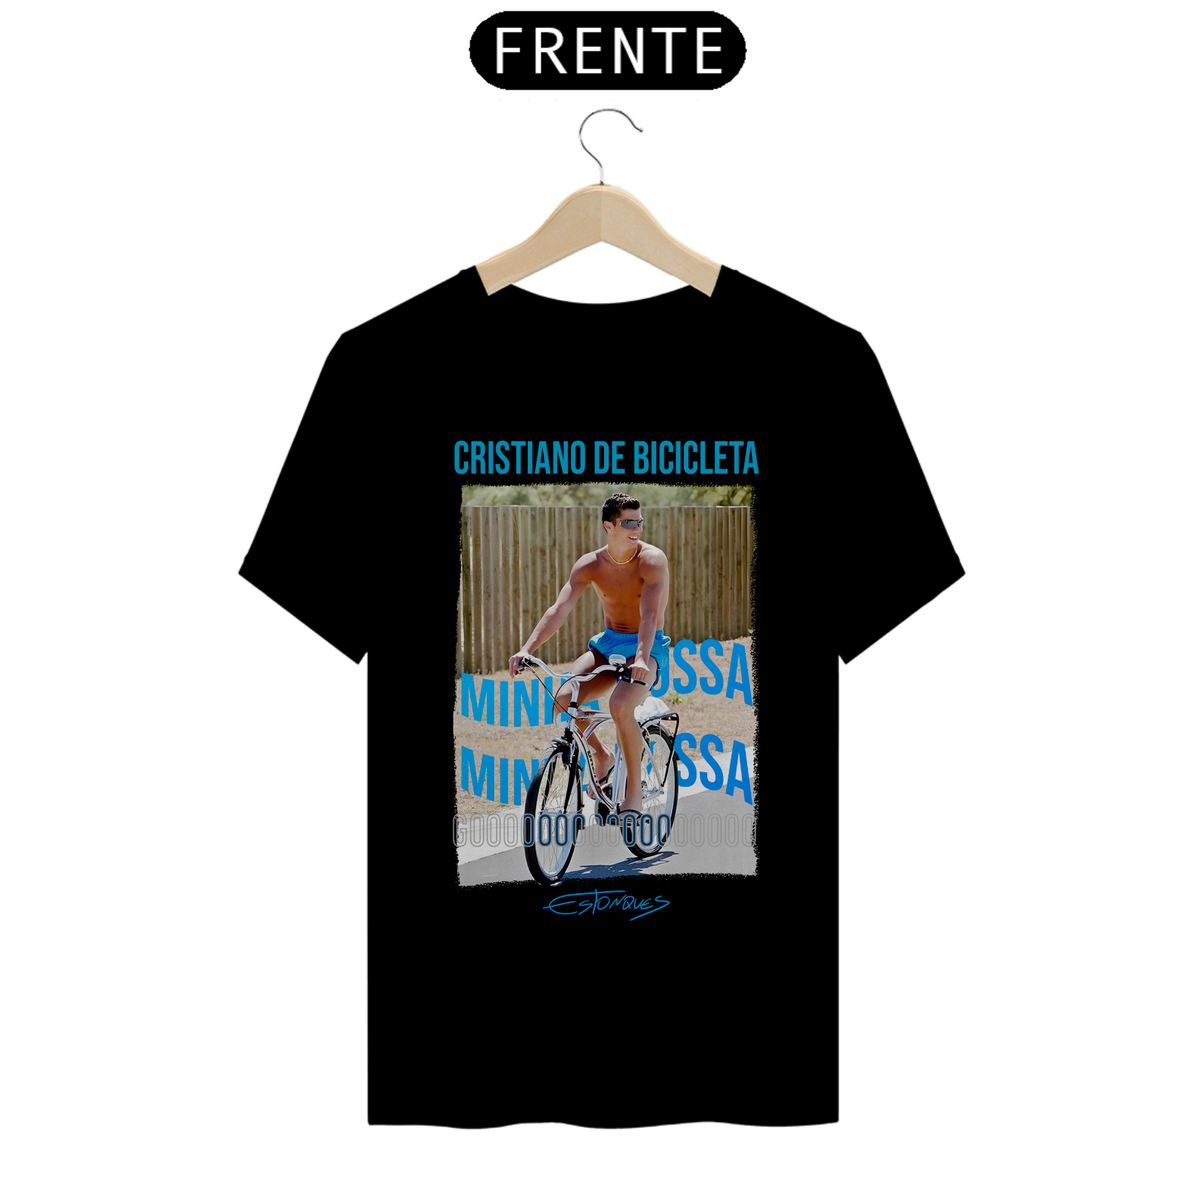 Nome do produto: Camiseta Cristiano de Bicicleta (Minha Nossa)